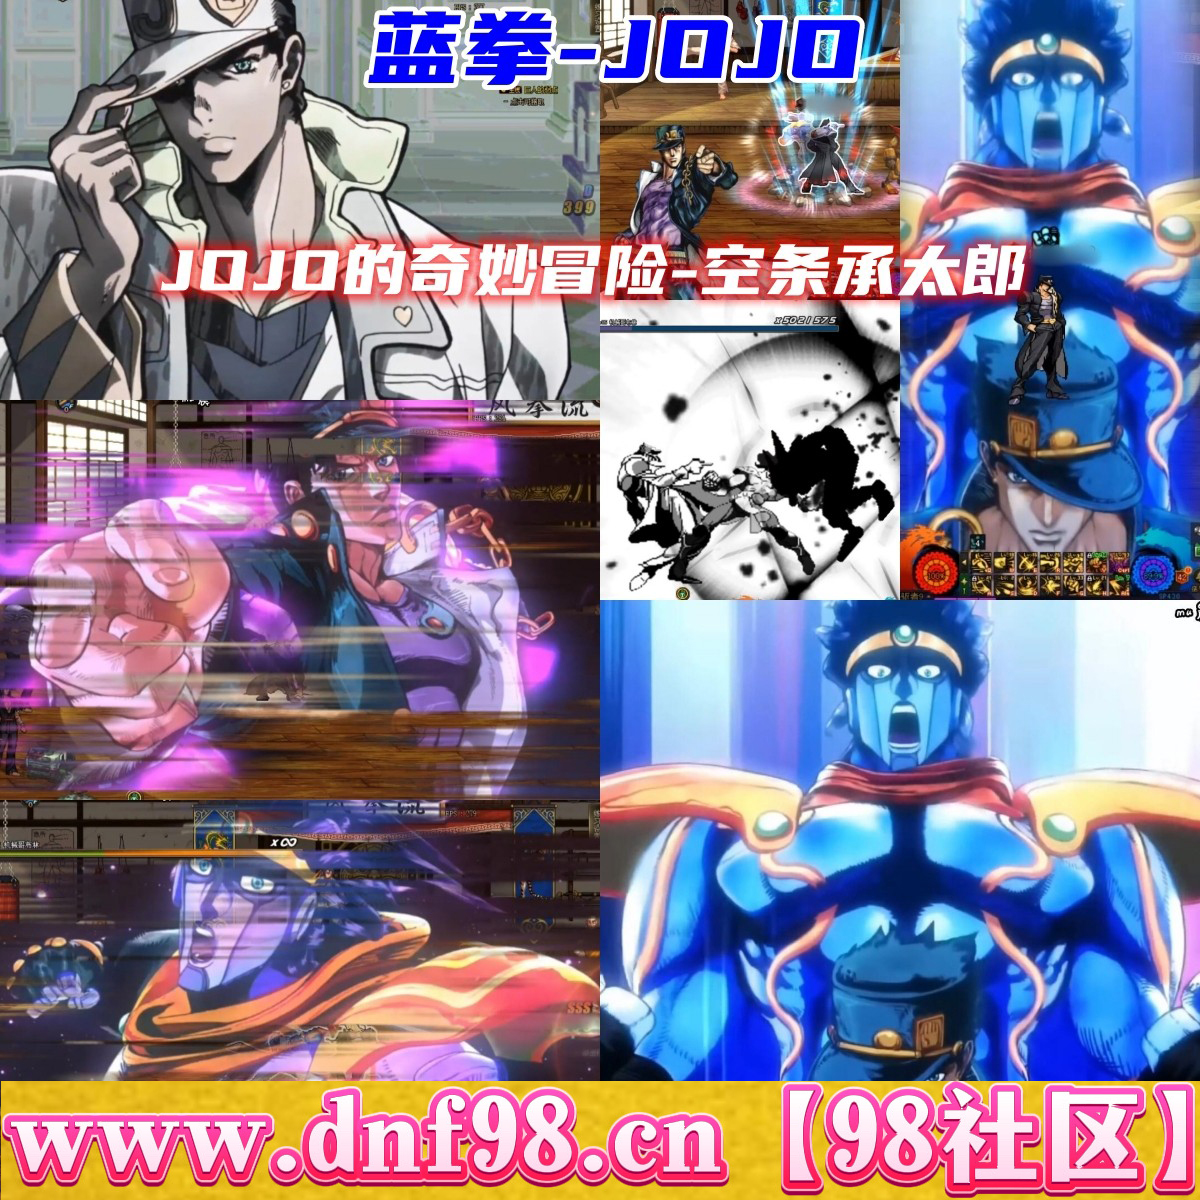 【蓝拳-JOJO】3.07版本（全技能＋立绘＋时装＋语音包）